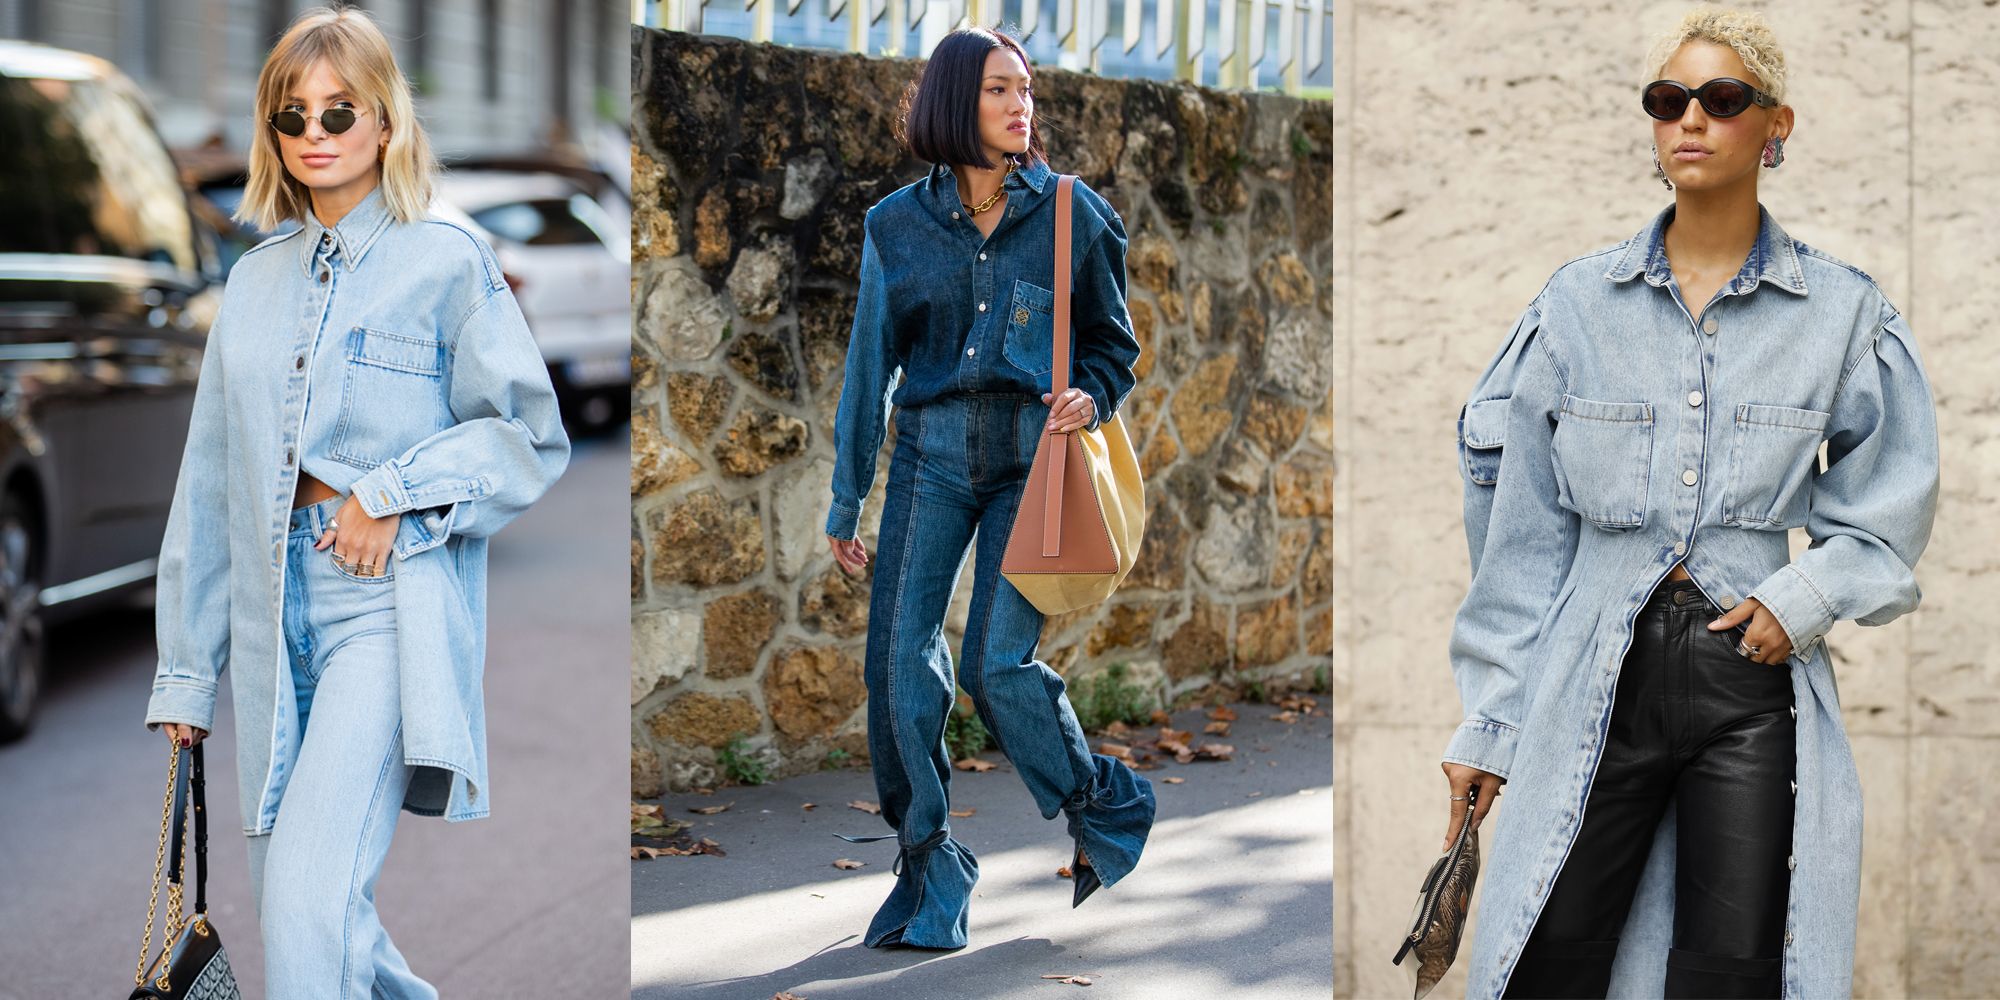 Camicia di jeans donna: lunga è il top trend inverno 2020